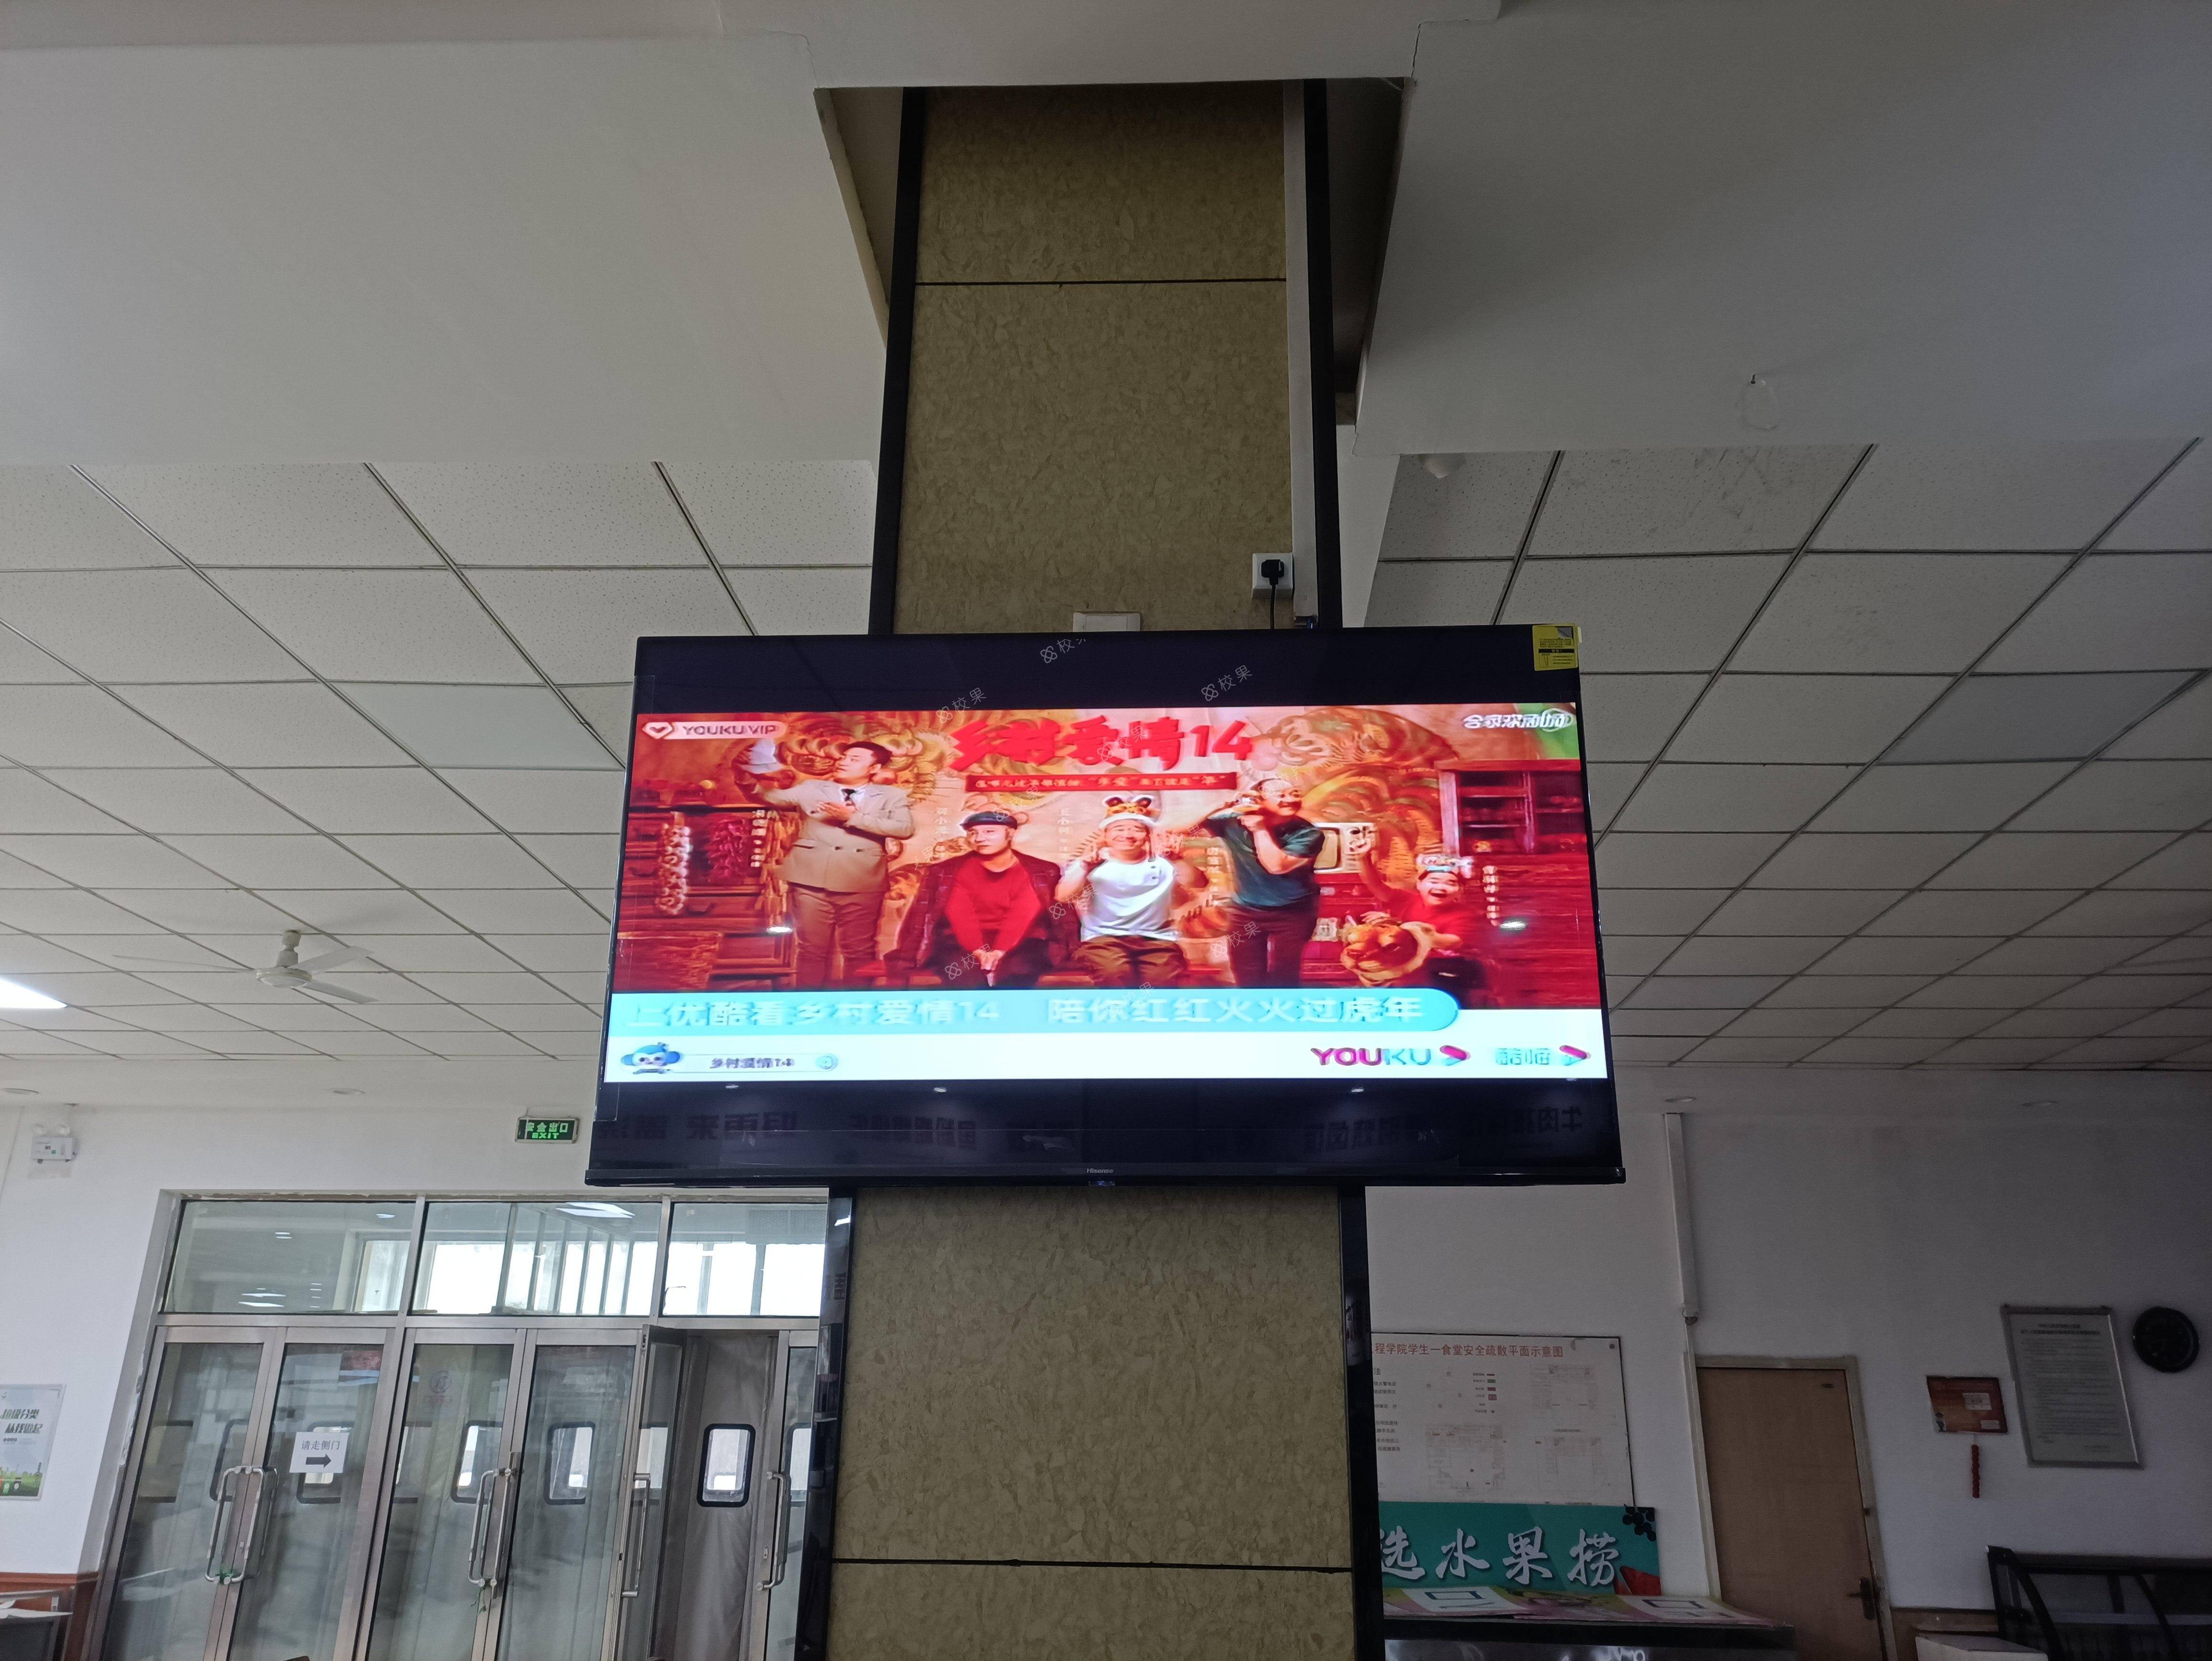 液晶屏广告 重庆航天职业技术学院-江北校区